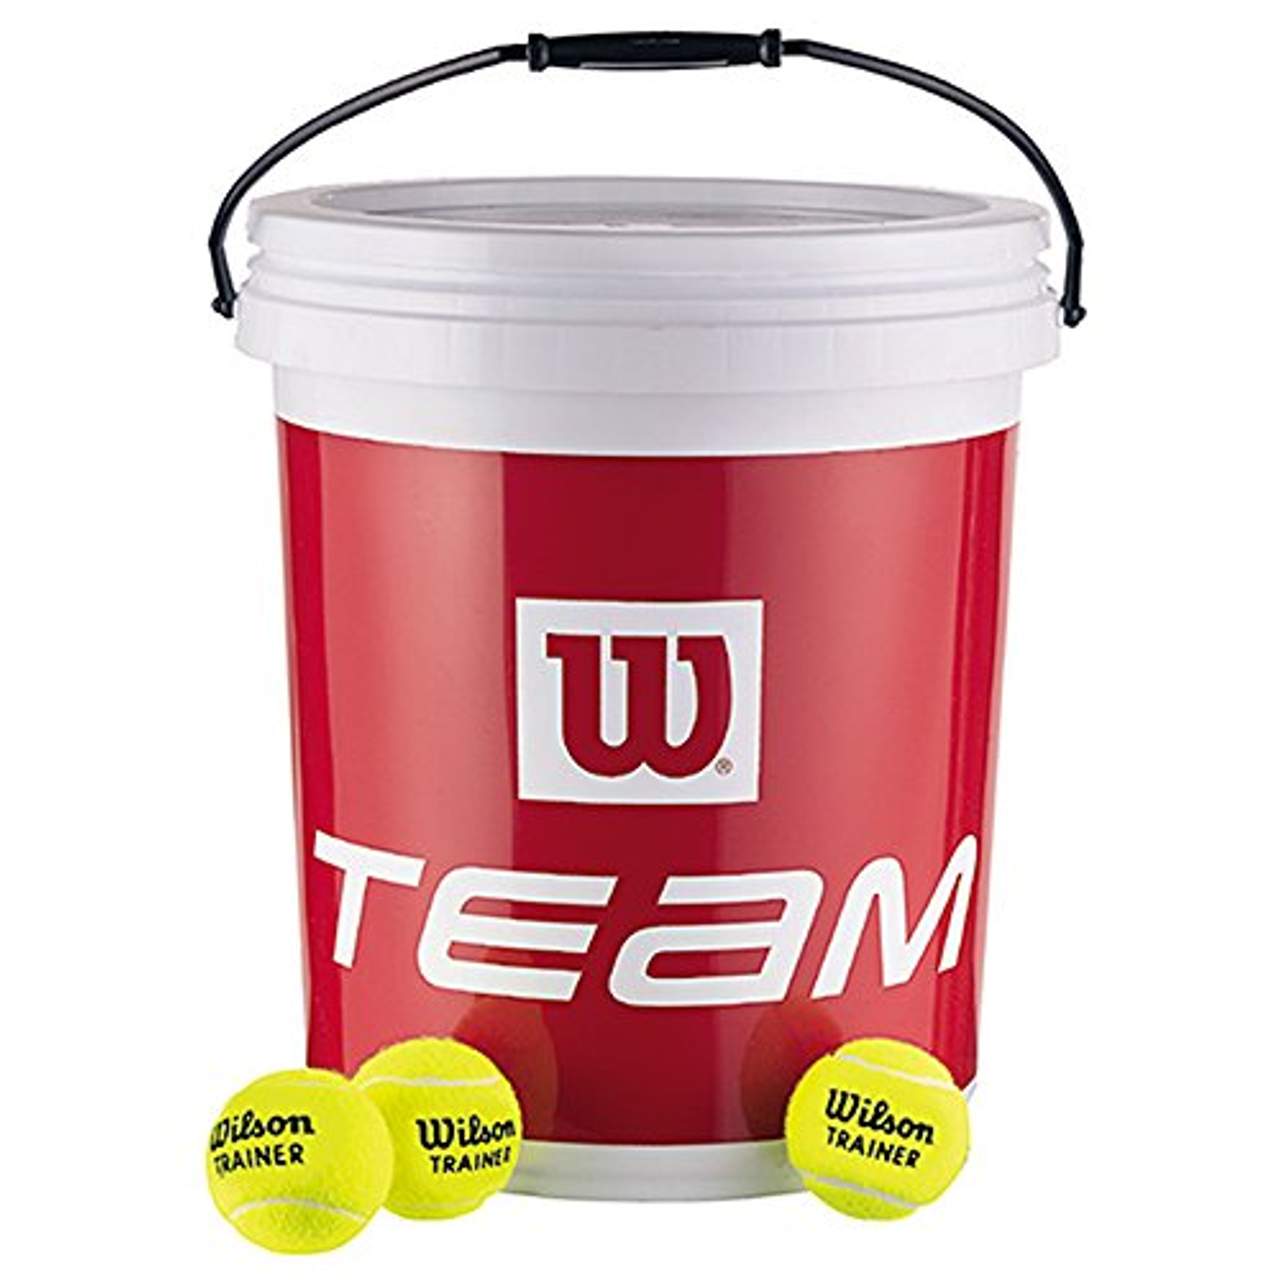 Preis der farbigen Tennisbälle 5 Qualität Hochleistungs Tennisball Mixes 